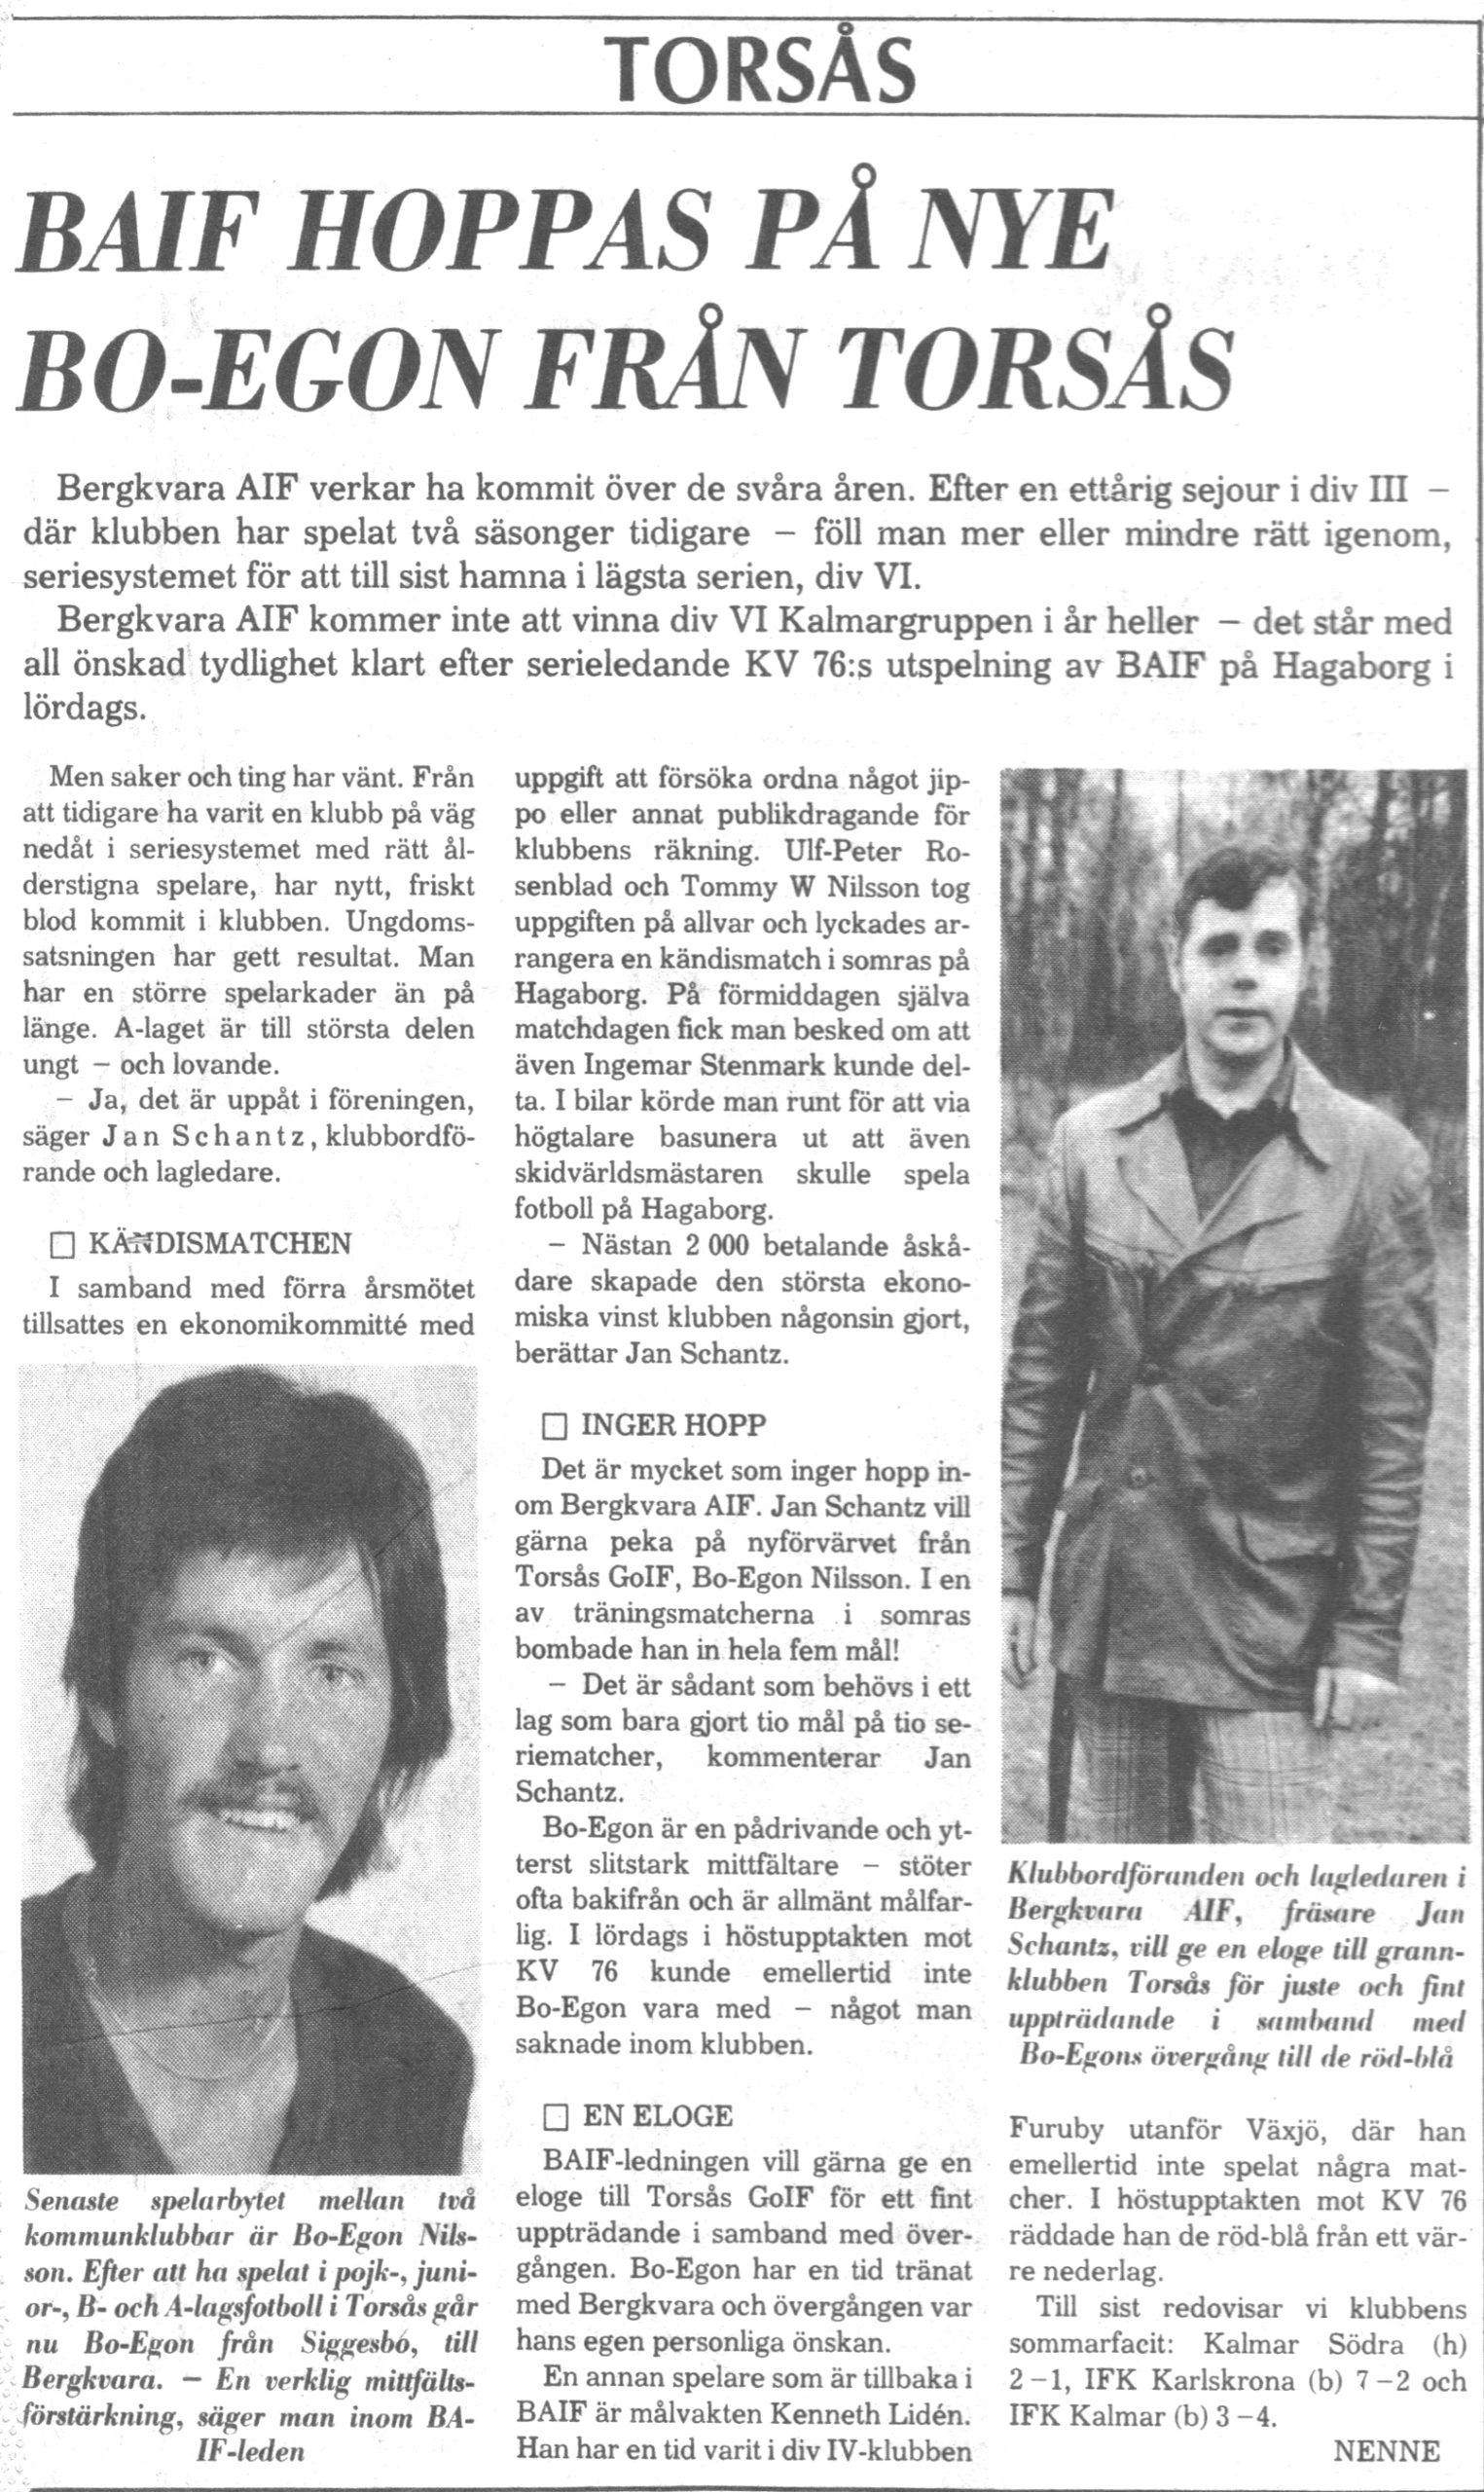 Artikel - BAIF hoppas på nye Bo-Egon från Torsås, 1979